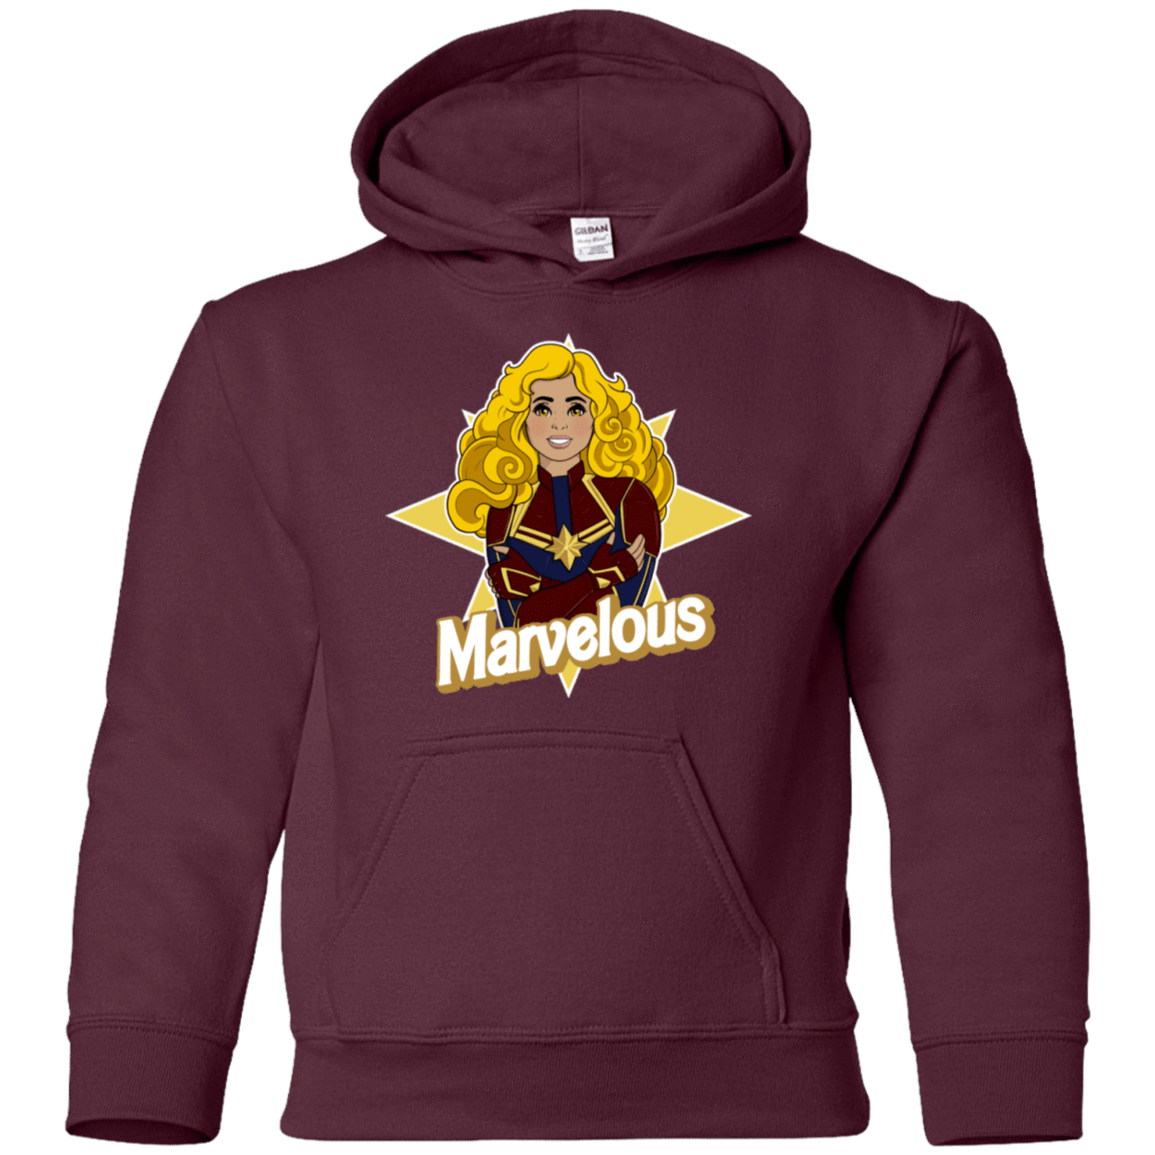 Sweatshirts Maroon / YS Marvelous Youth Hoodie